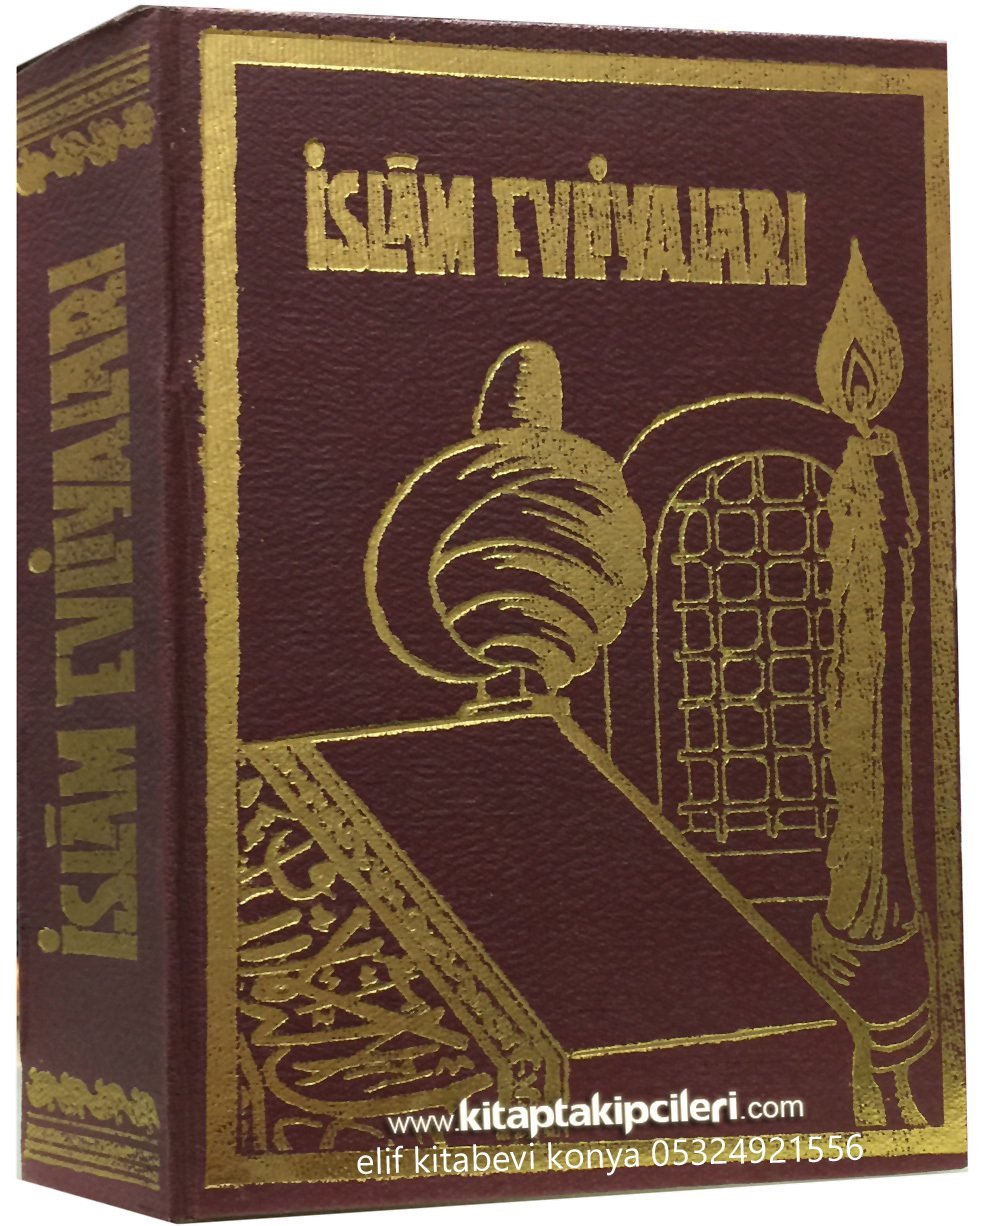 İslam Evliyaları, A. Vefik Kalkan, 1954 Yılı Basımı,700 Sayfa Ciltli